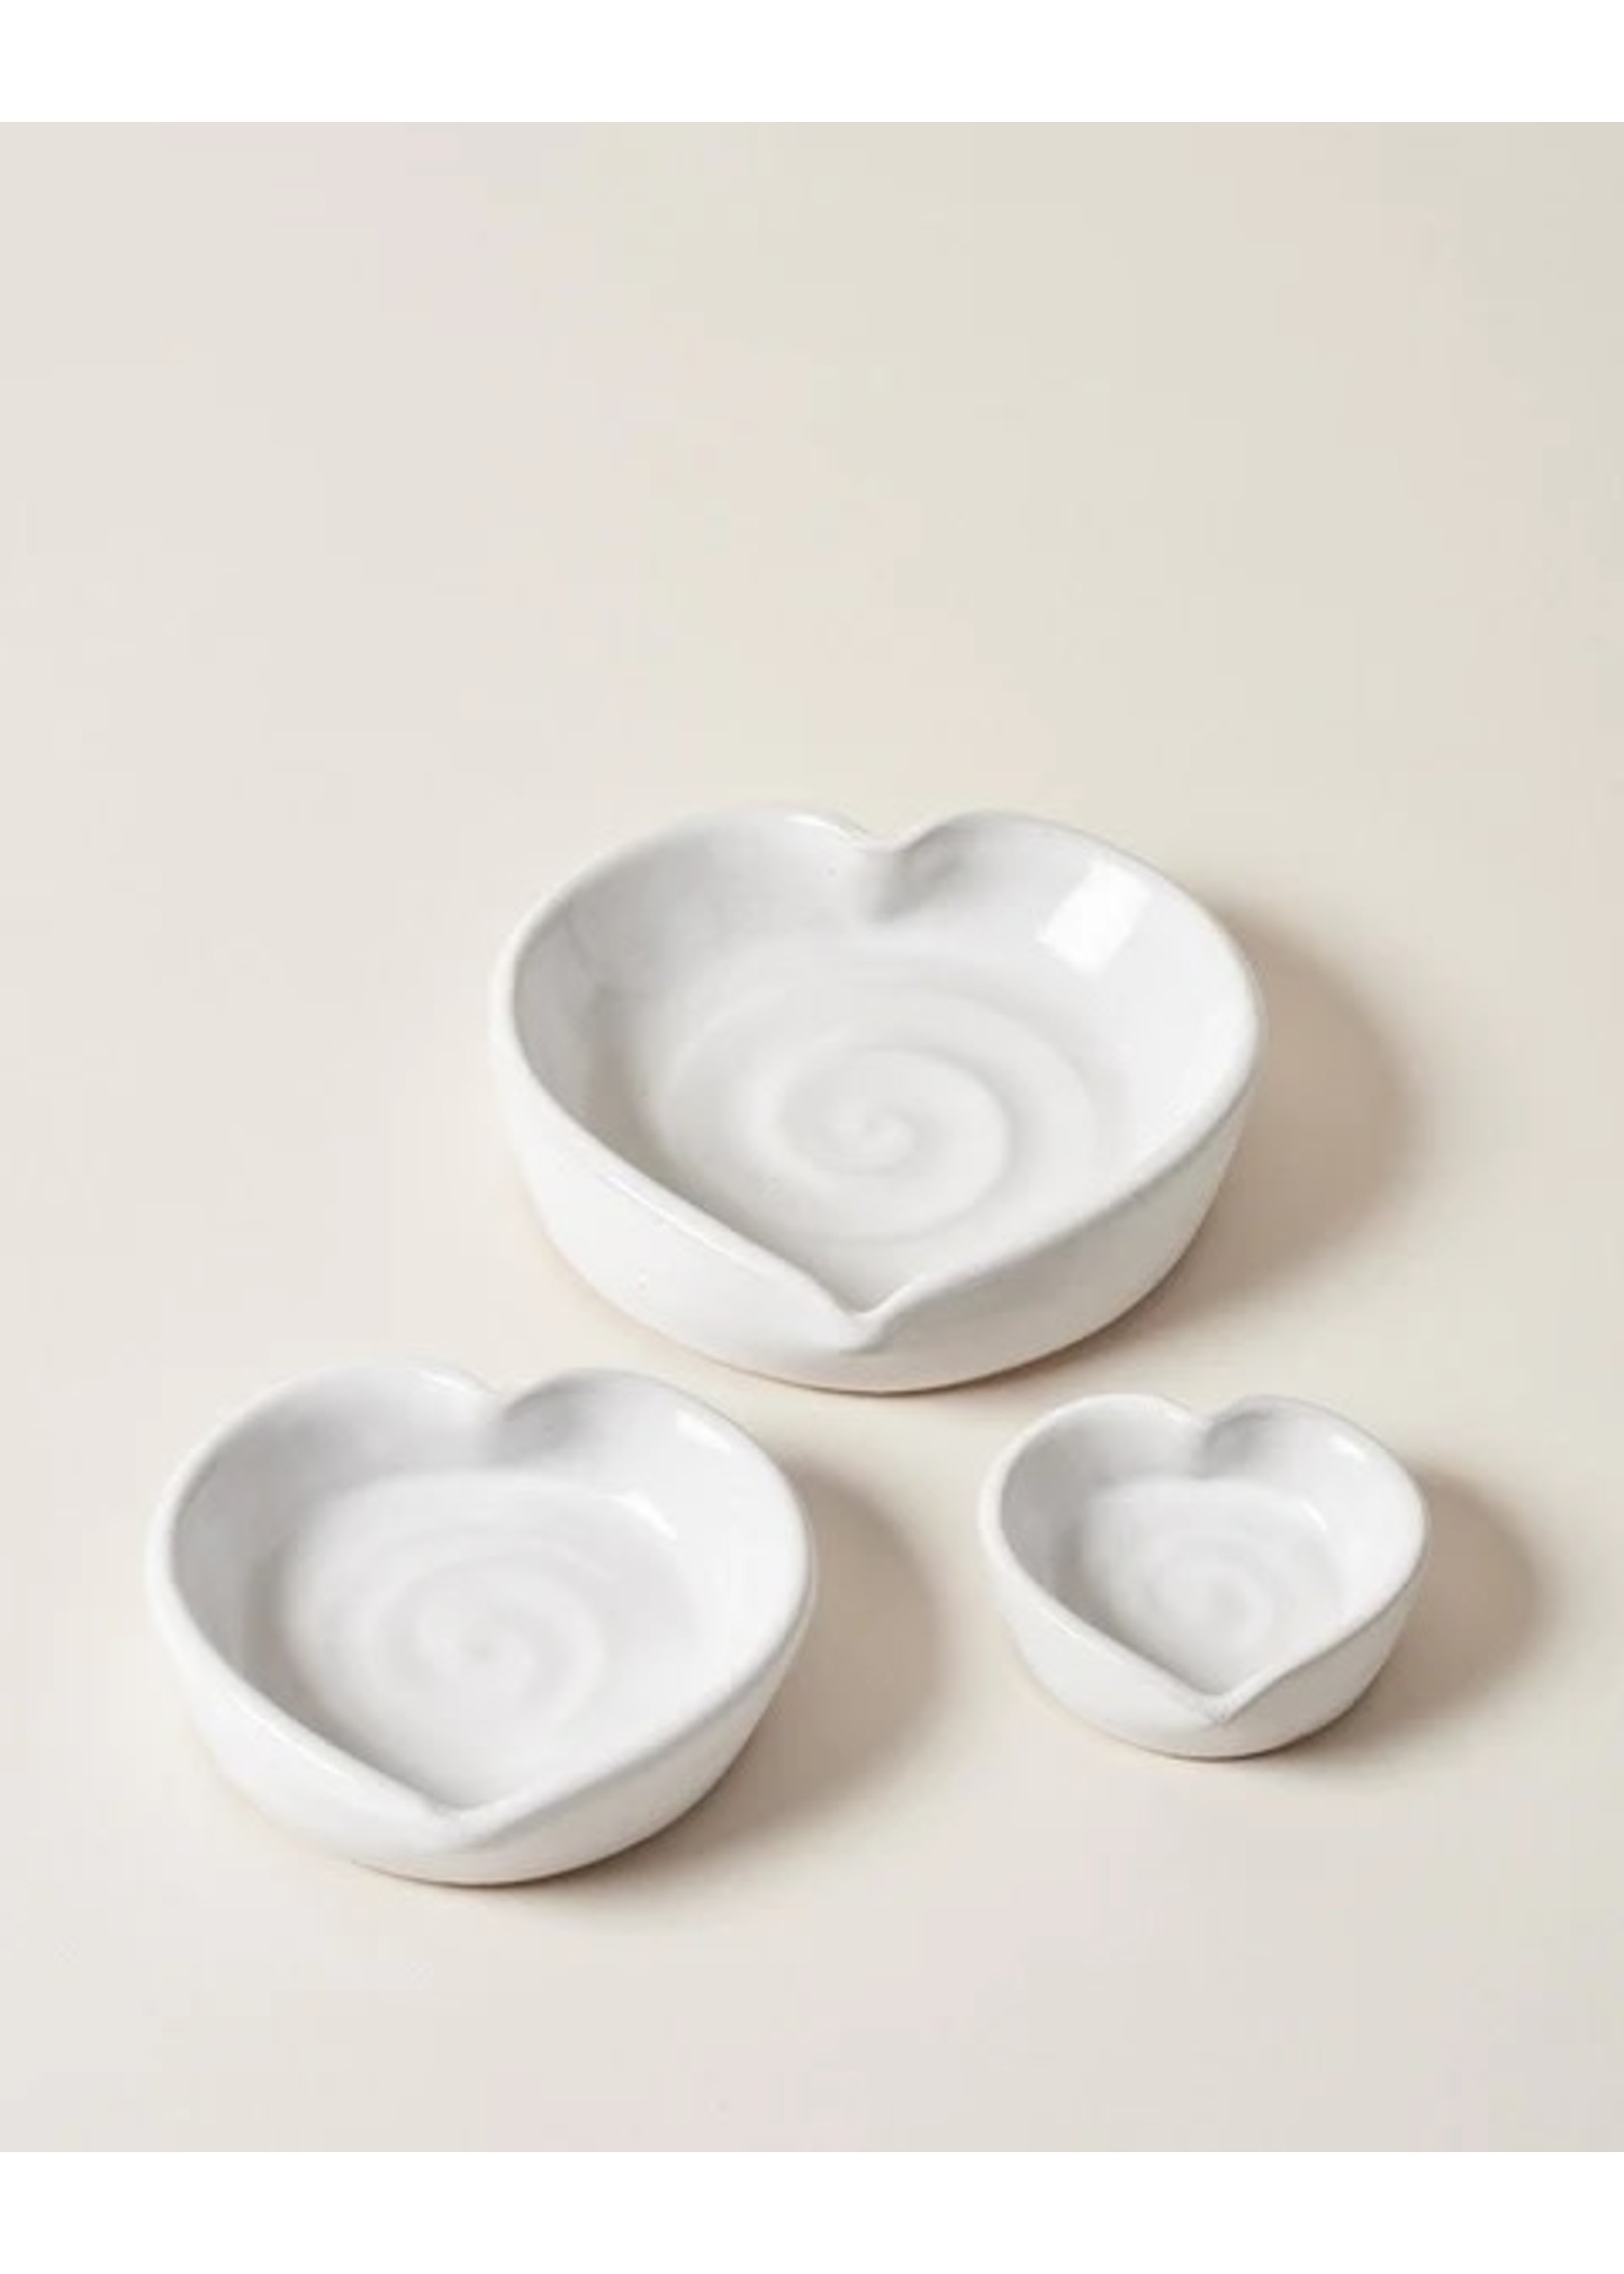 Farmhouse Pottery Heart Dish - Small